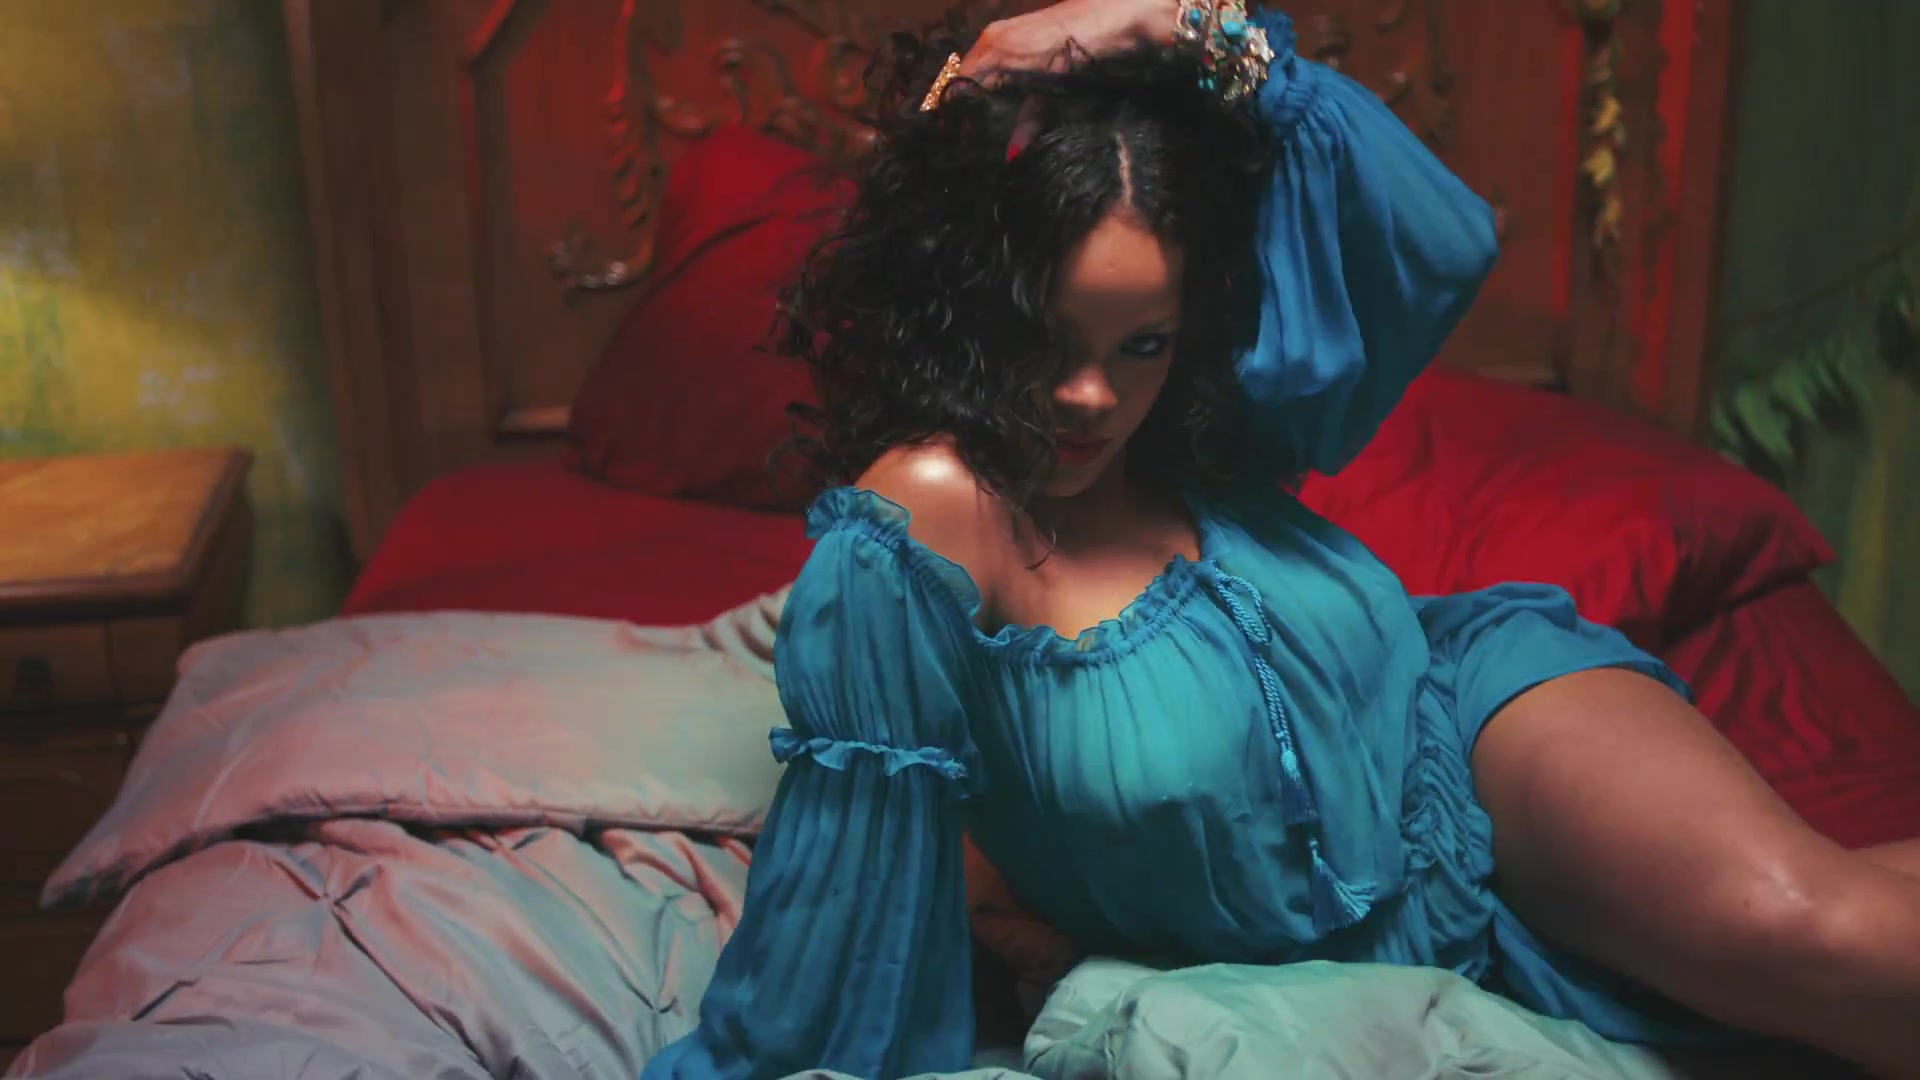 Porno Hanoi rihanna in Rihanna video